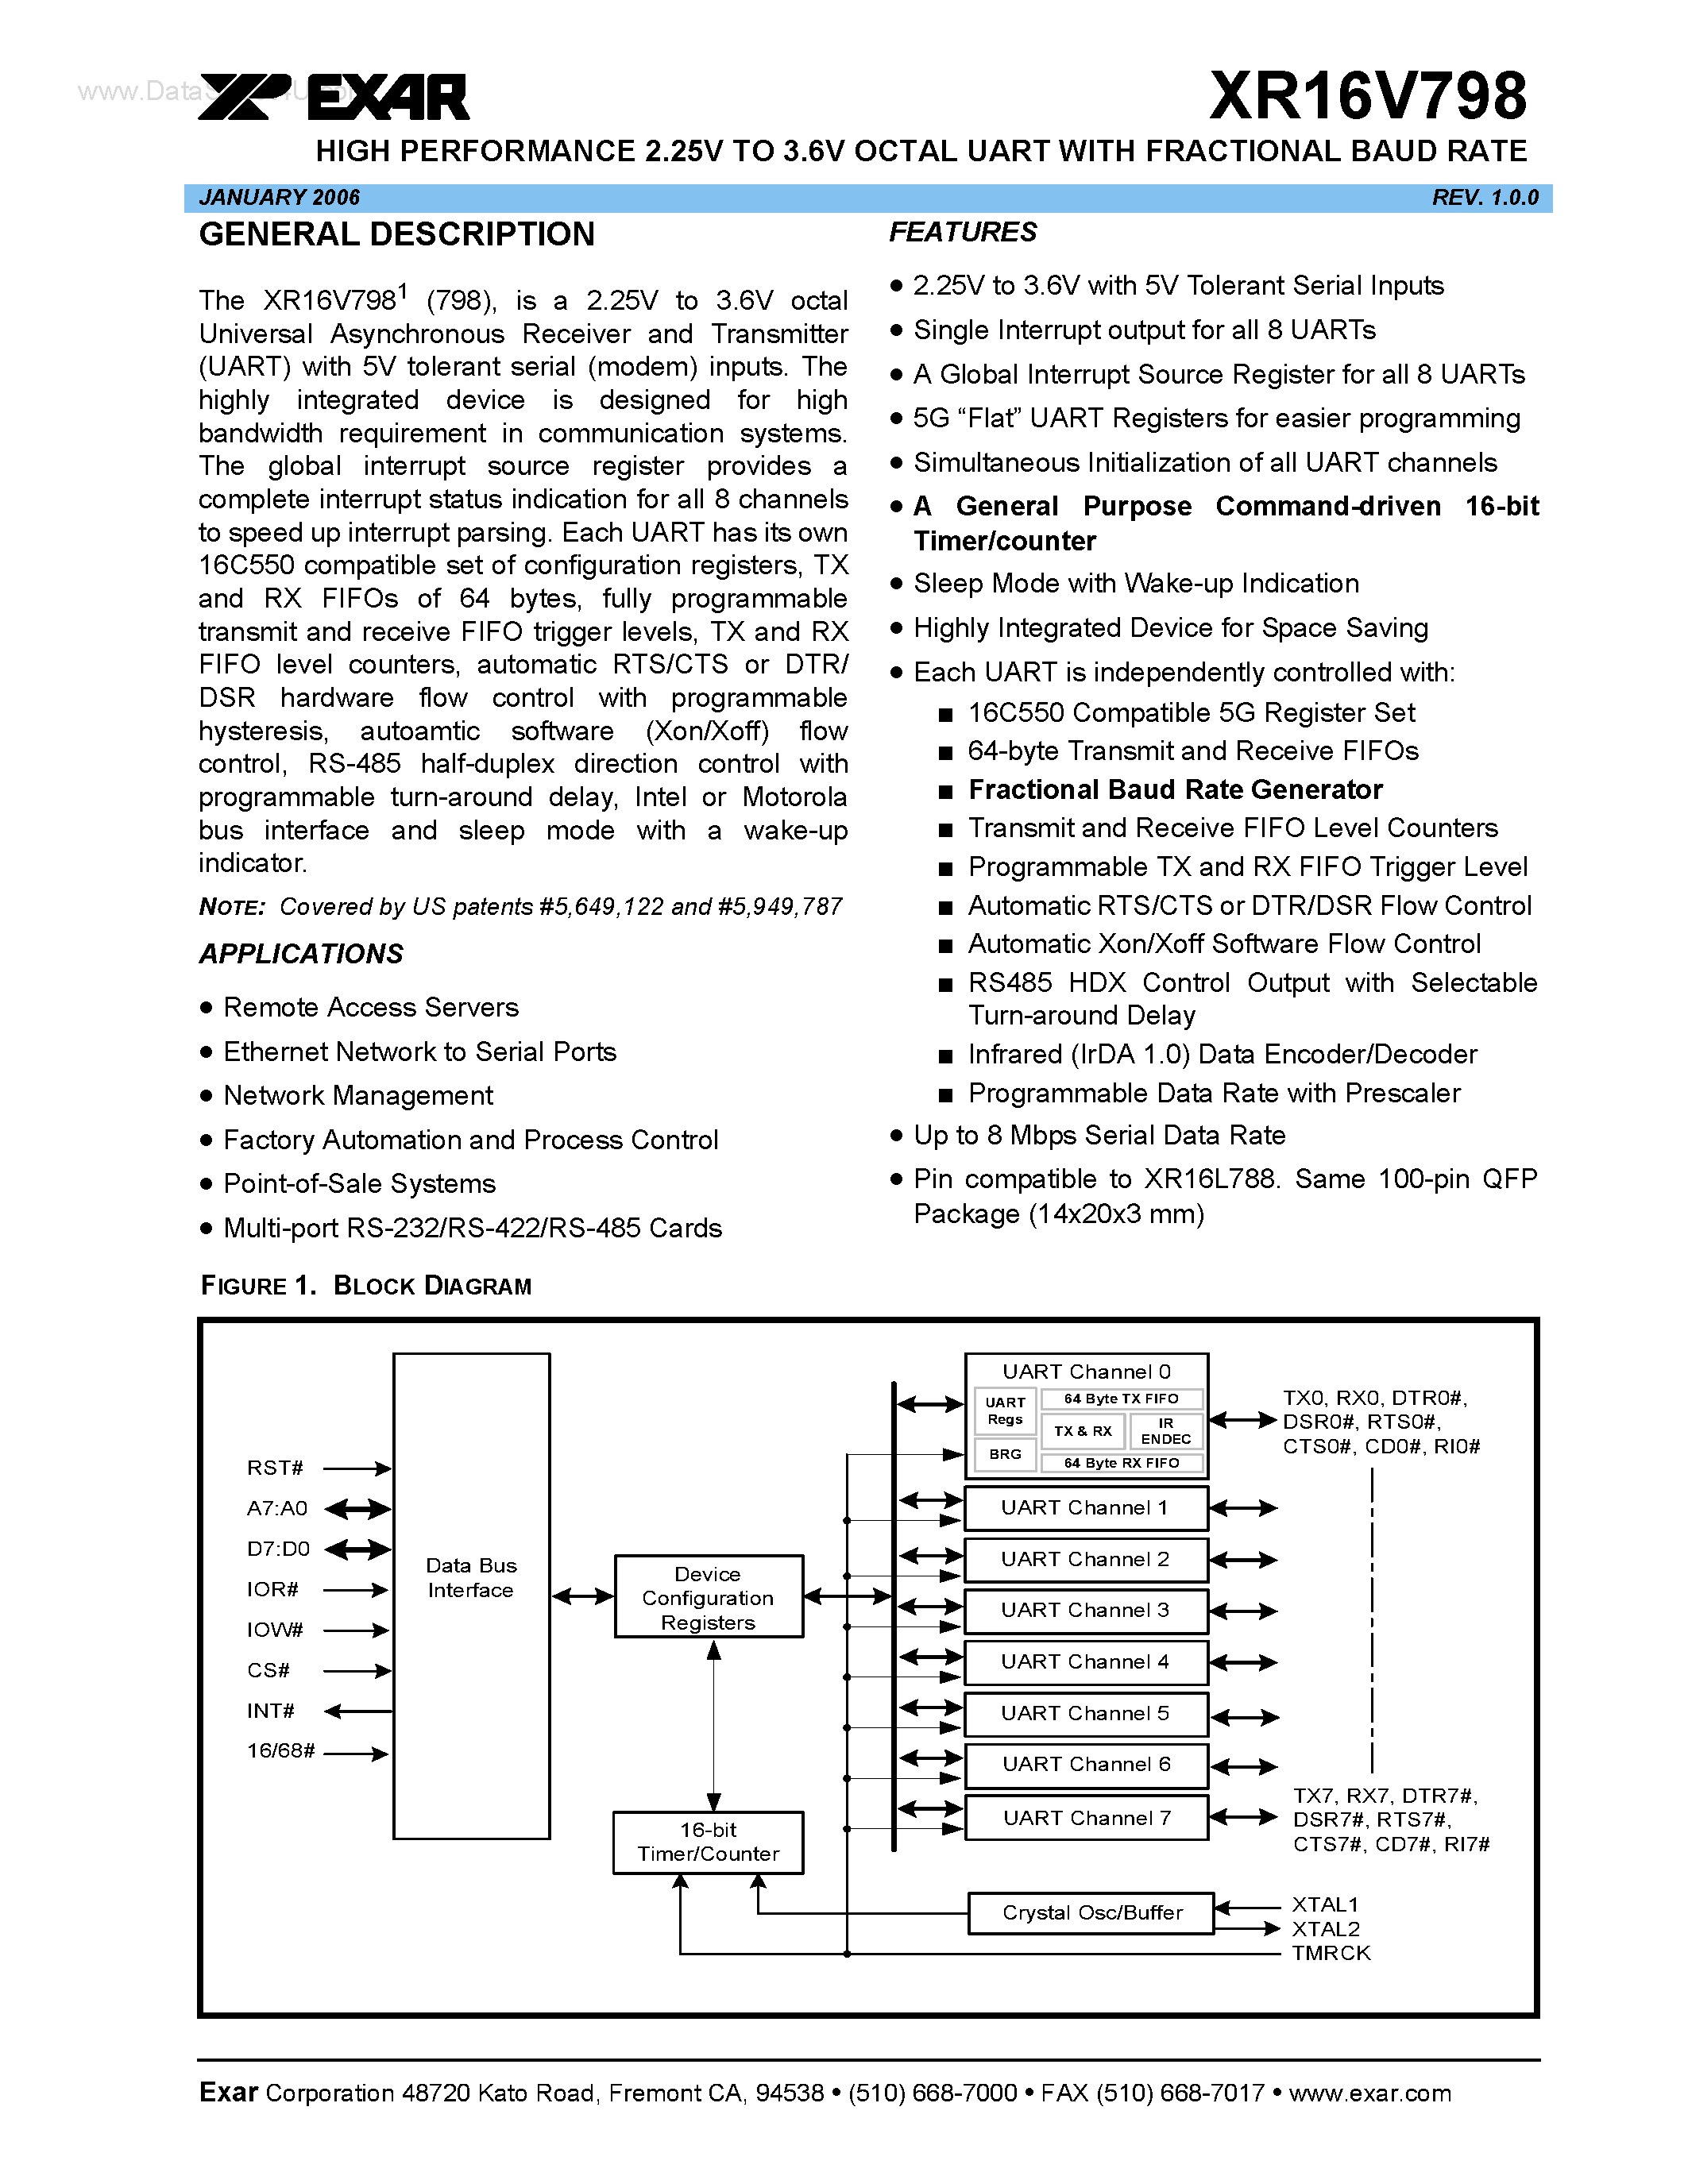 Datasheet XR16V798 - HIGH PERFORMANCE 2.25V TO 3.6V OCTAL UART page 1